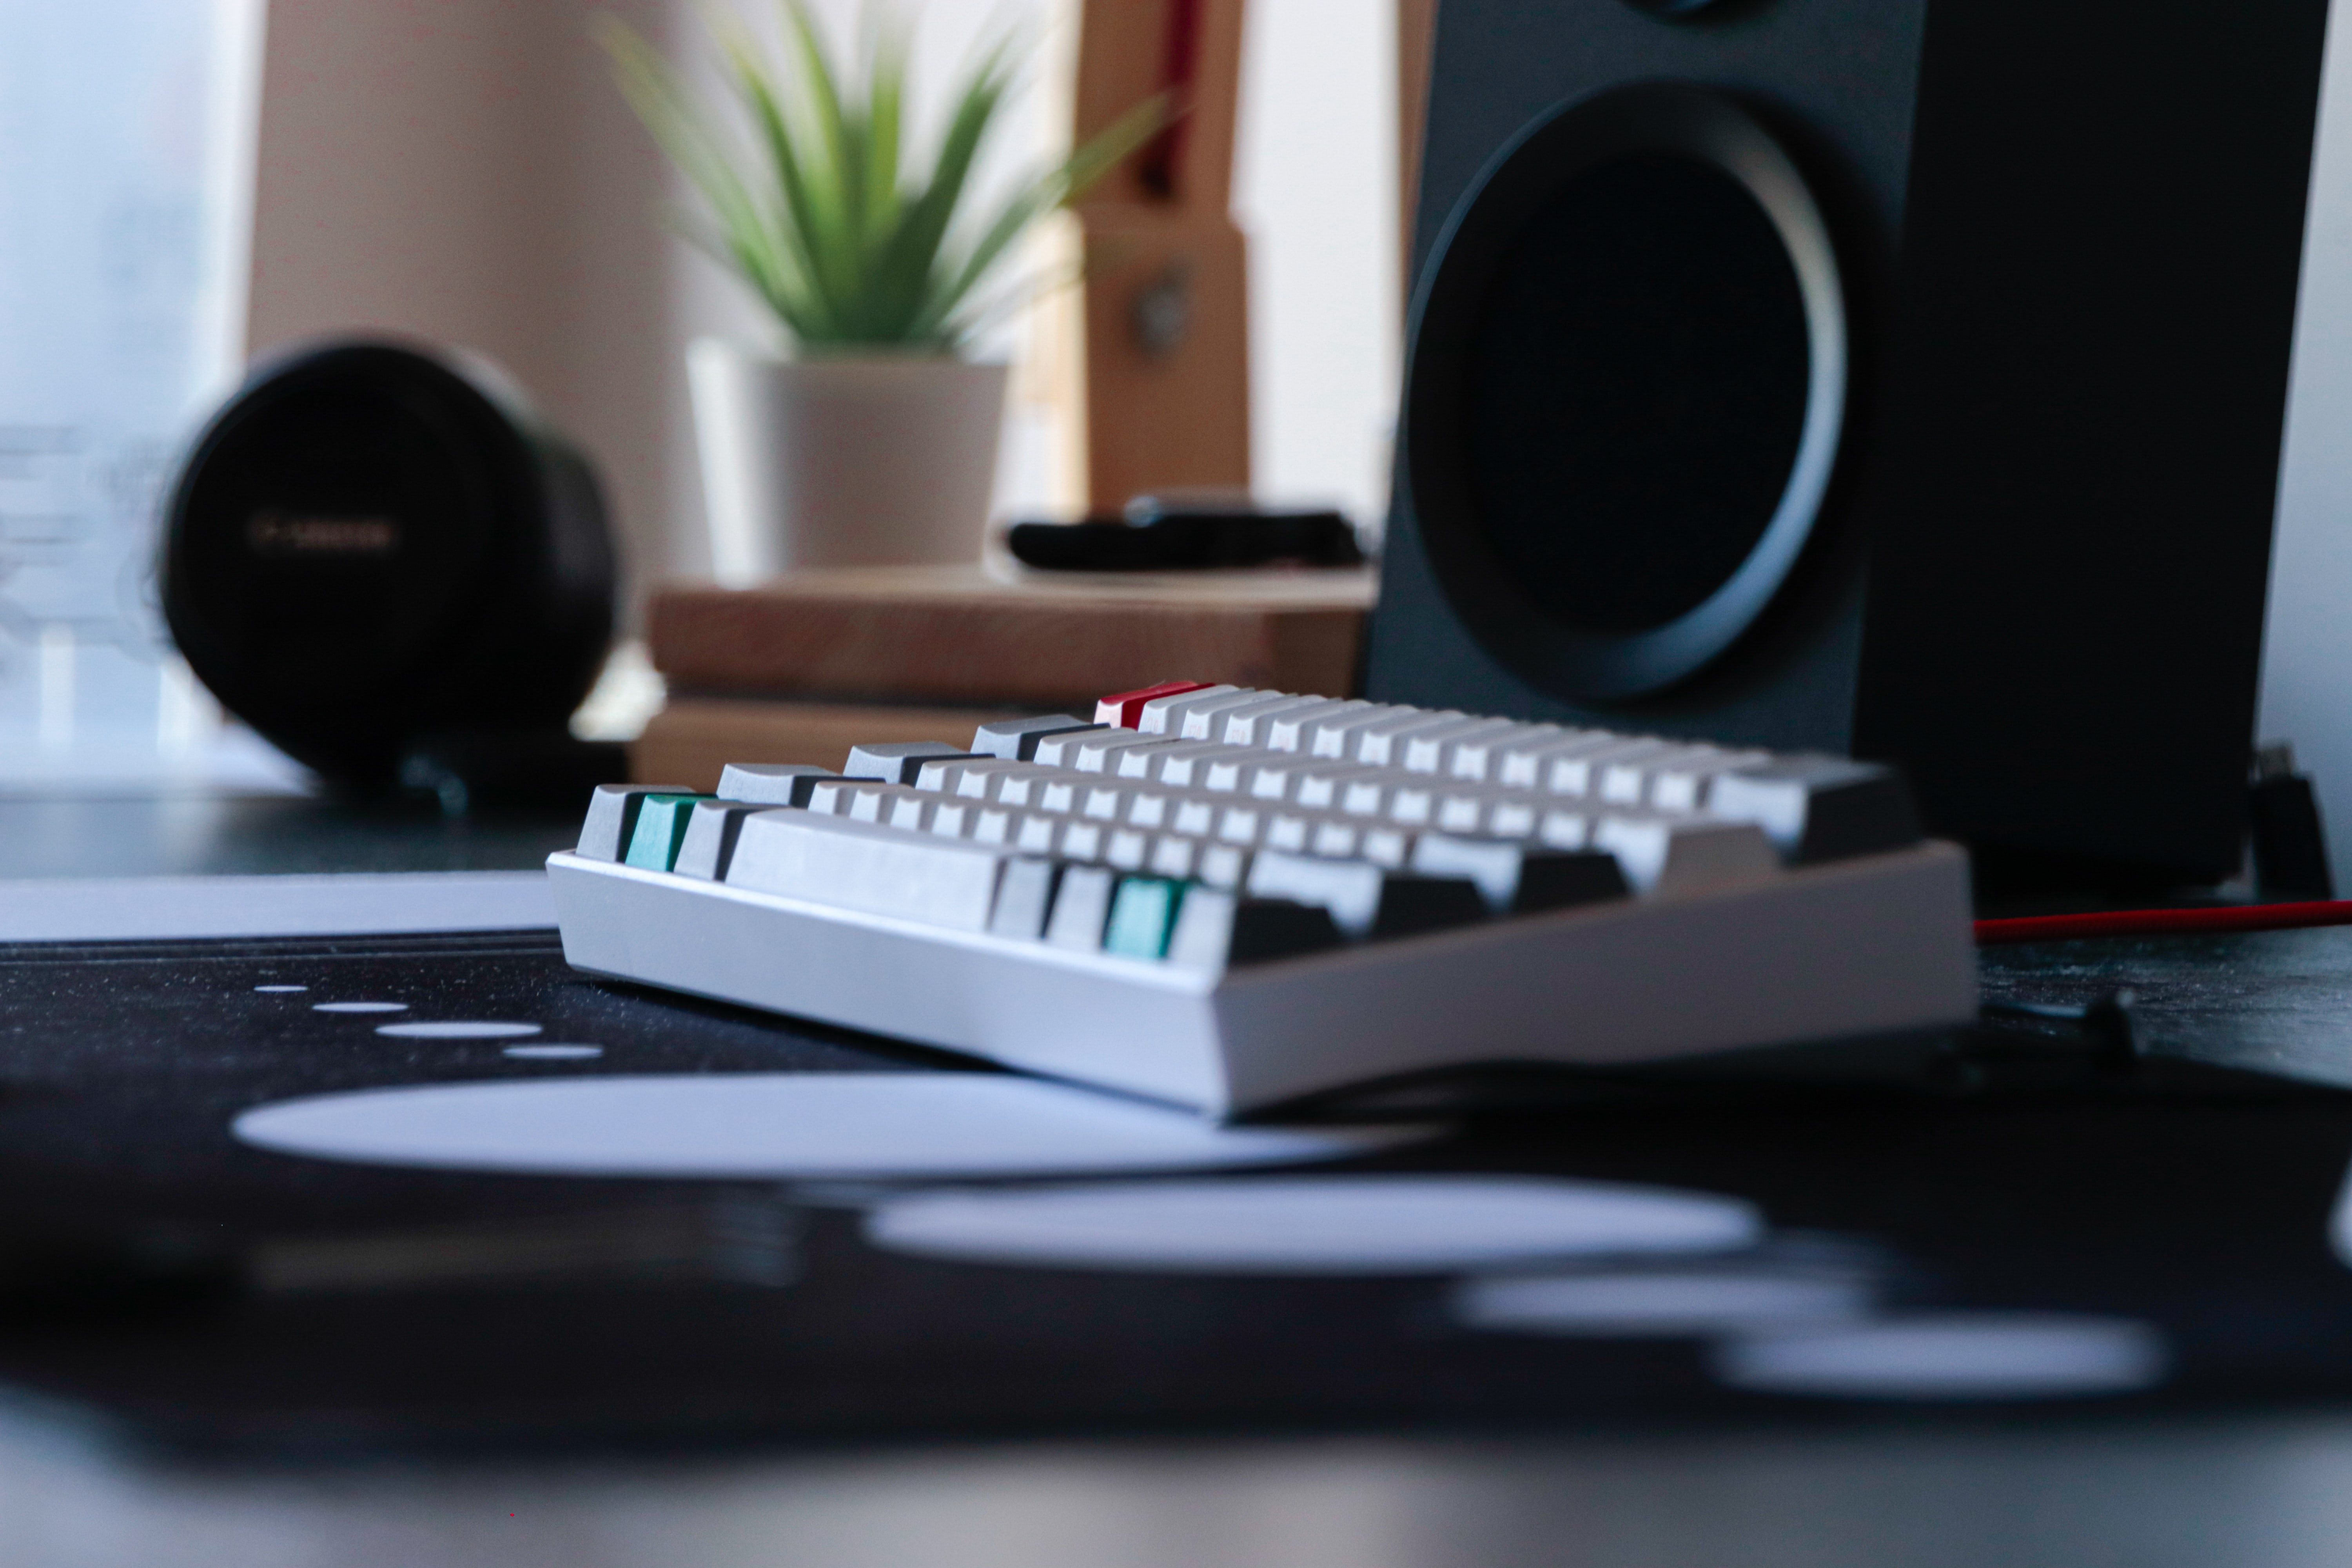 a keyboard on a desk